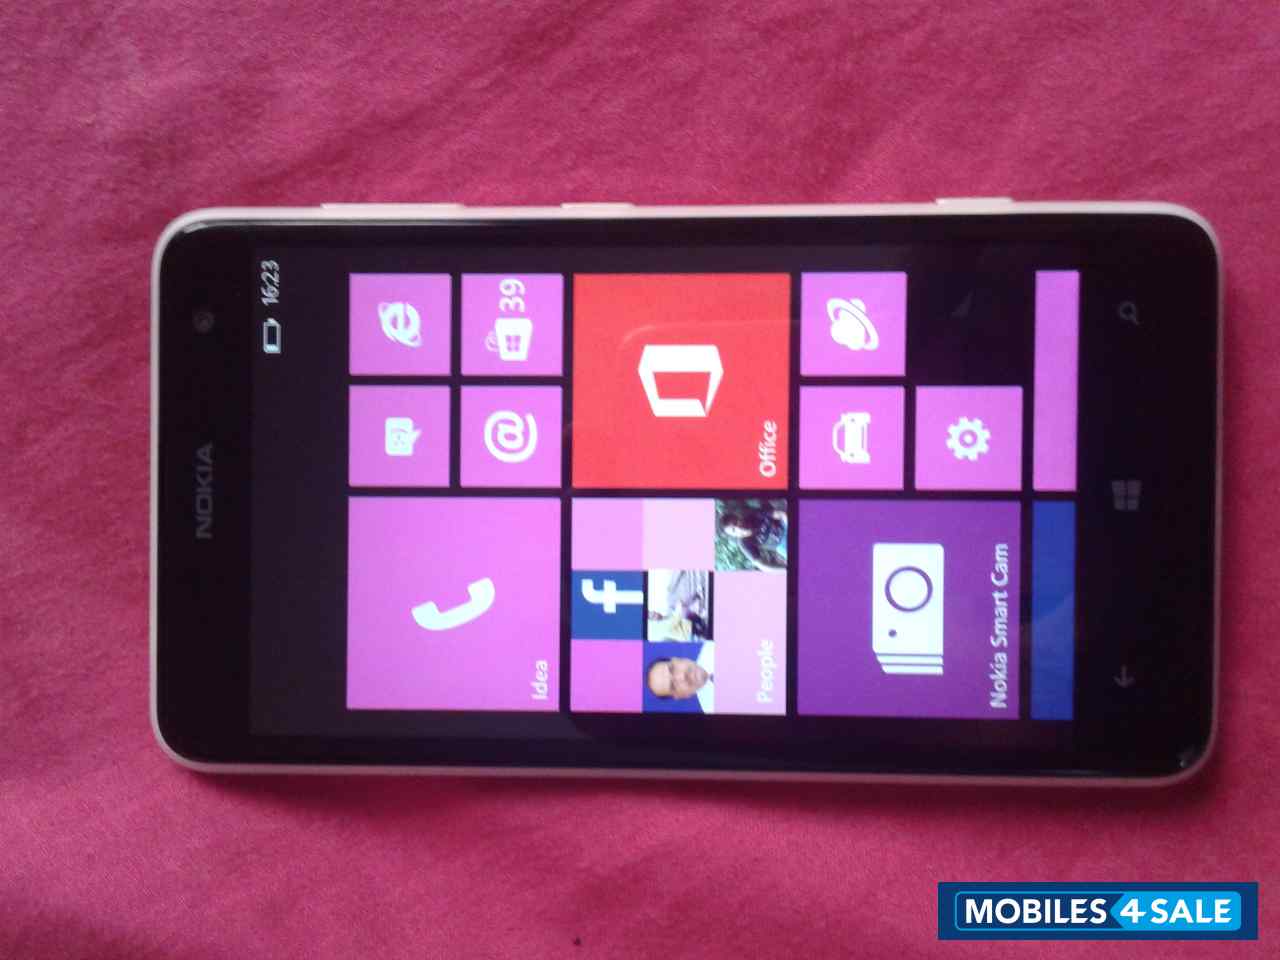 White Nokia Lumia 625